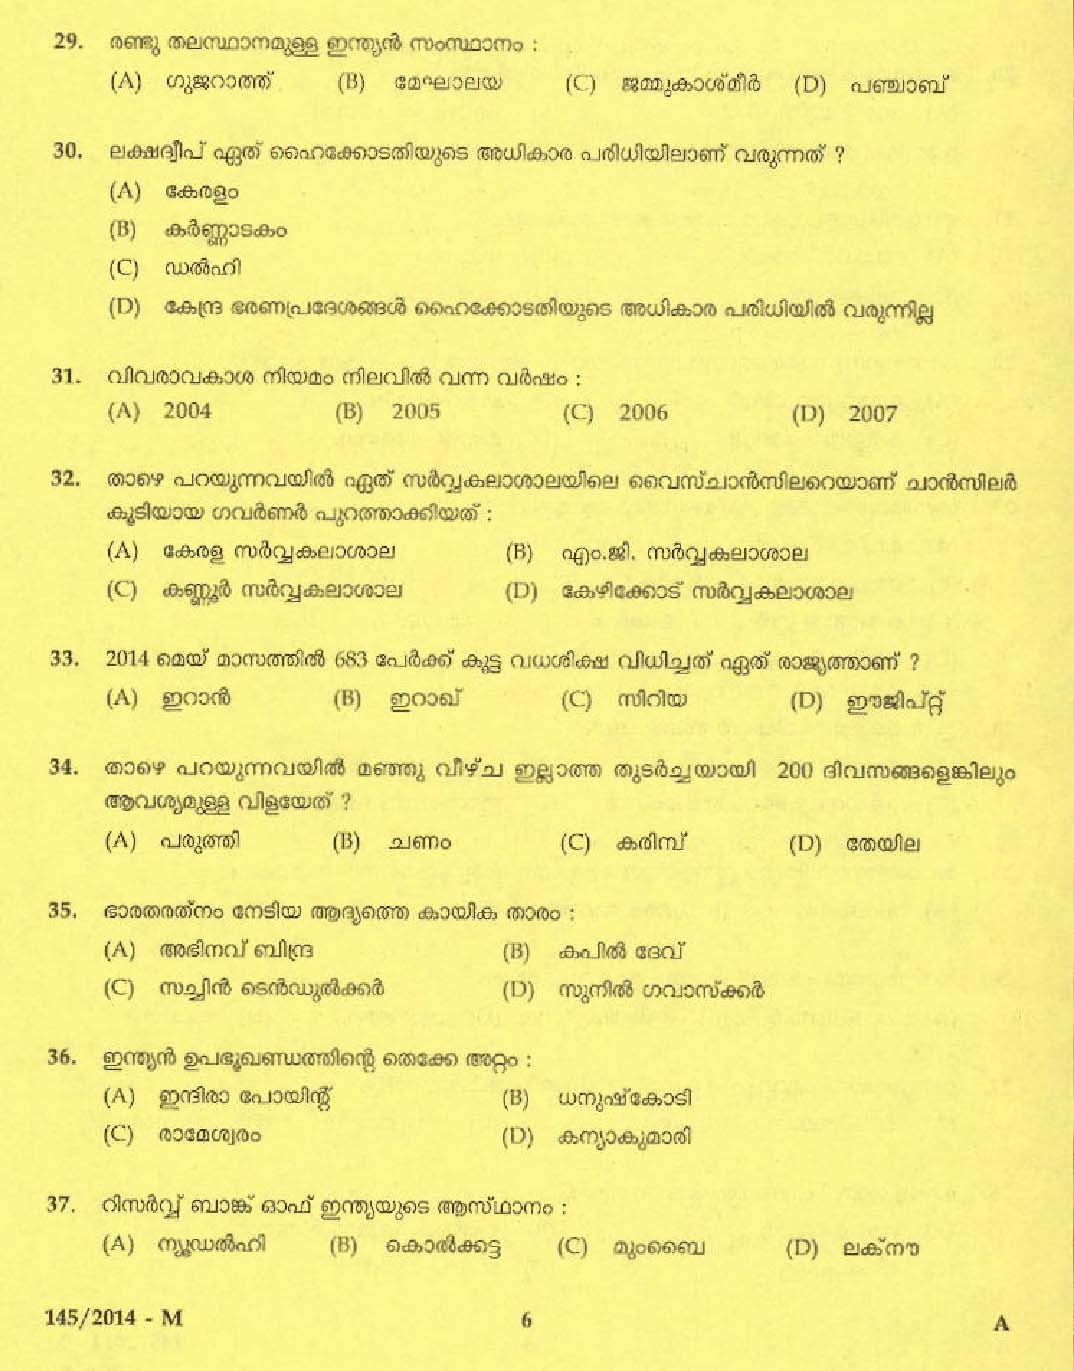 Kerala PSC Driver Grade II Exam 2014 Question Paper Code 1452014 M 4